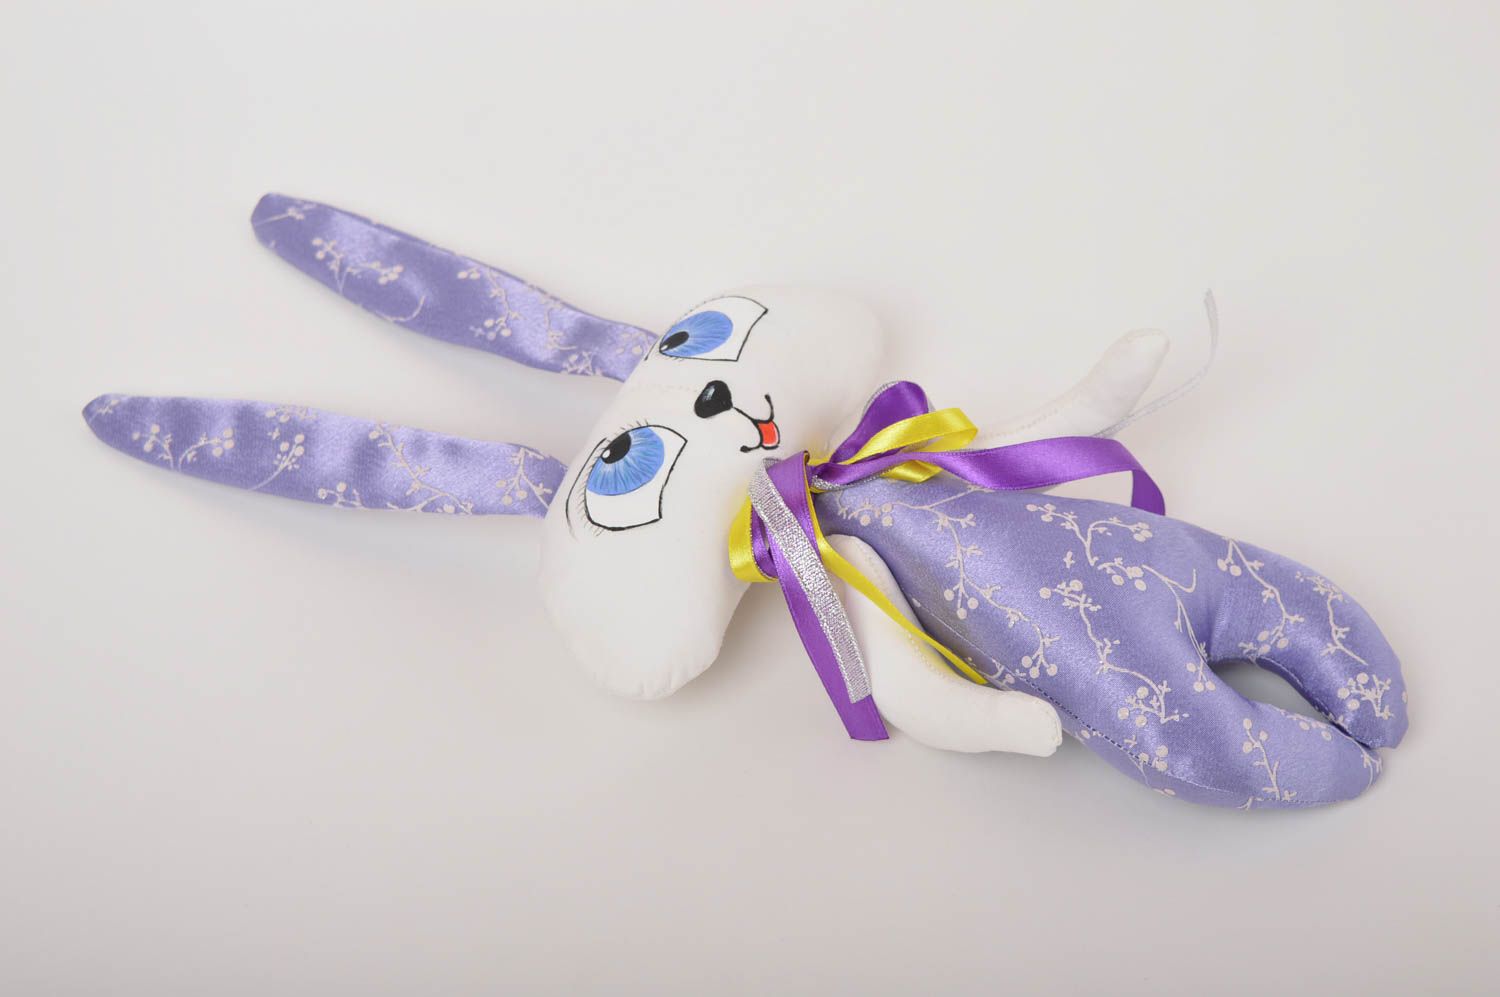 Jouet lapin Peluche faite main en tissu peinte à l'acrylique Cadeau pour enfant photo 2